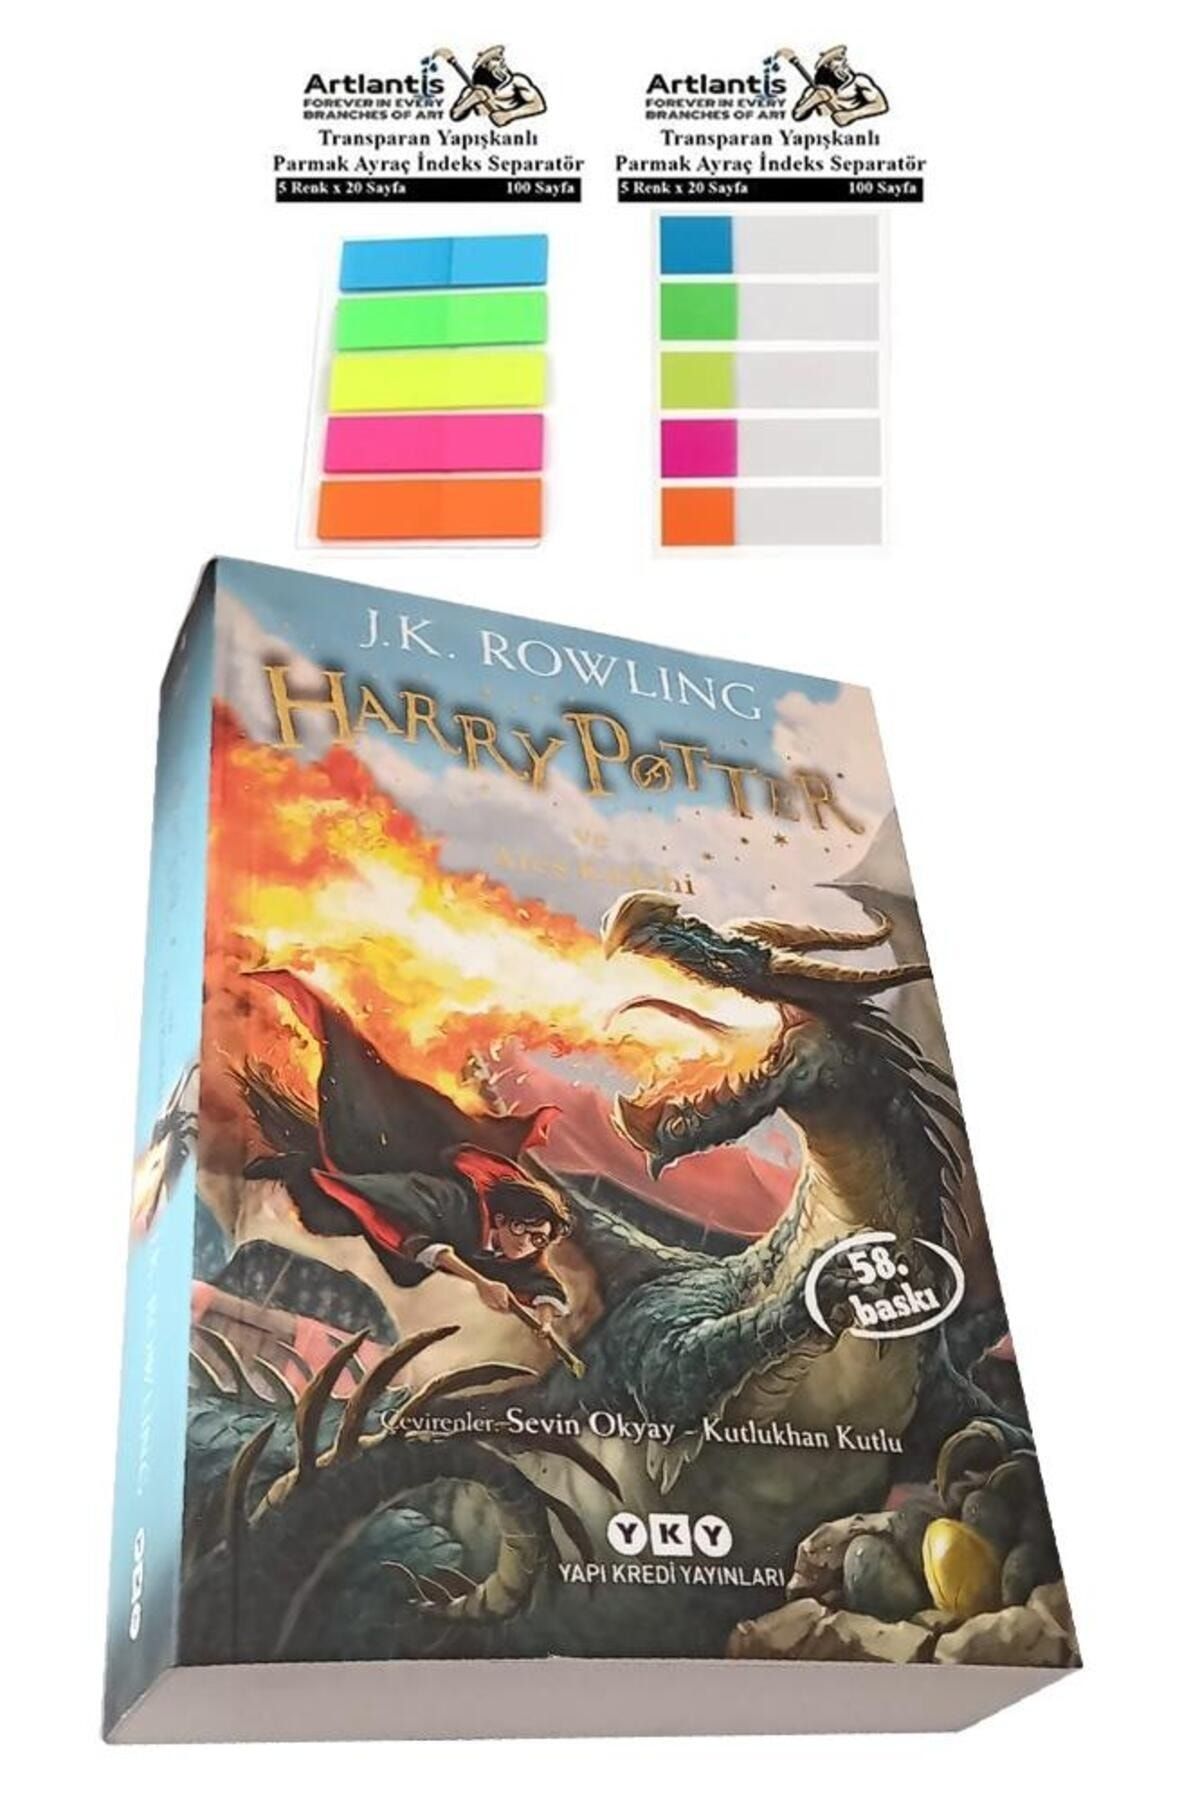 Artlantis Harry Potter 4 Ateş Kadehi 660 Sayfa 1 Adet Transparan Kitap Ayraç 2 Paket Hary Poter ve Ateş Kadehi